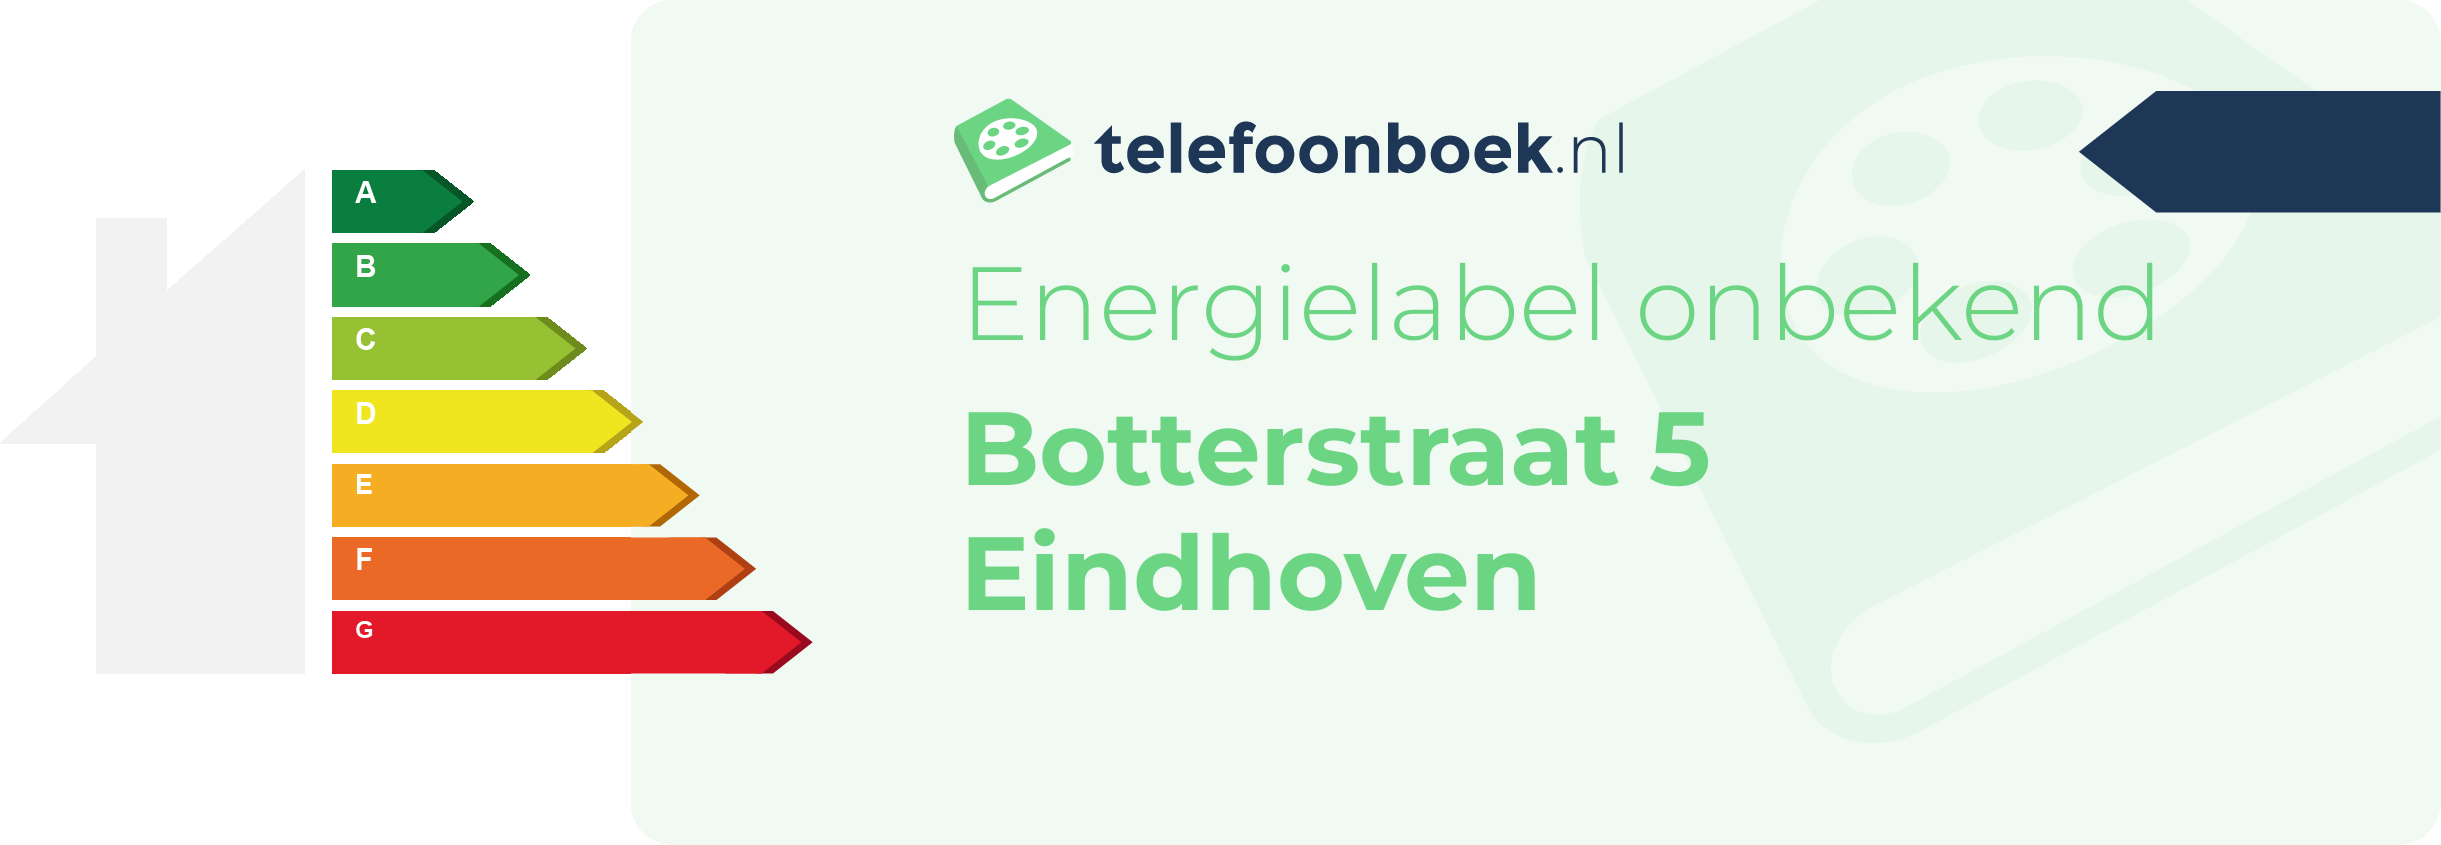 Energielabel Botterstraat 5 Eindhoven